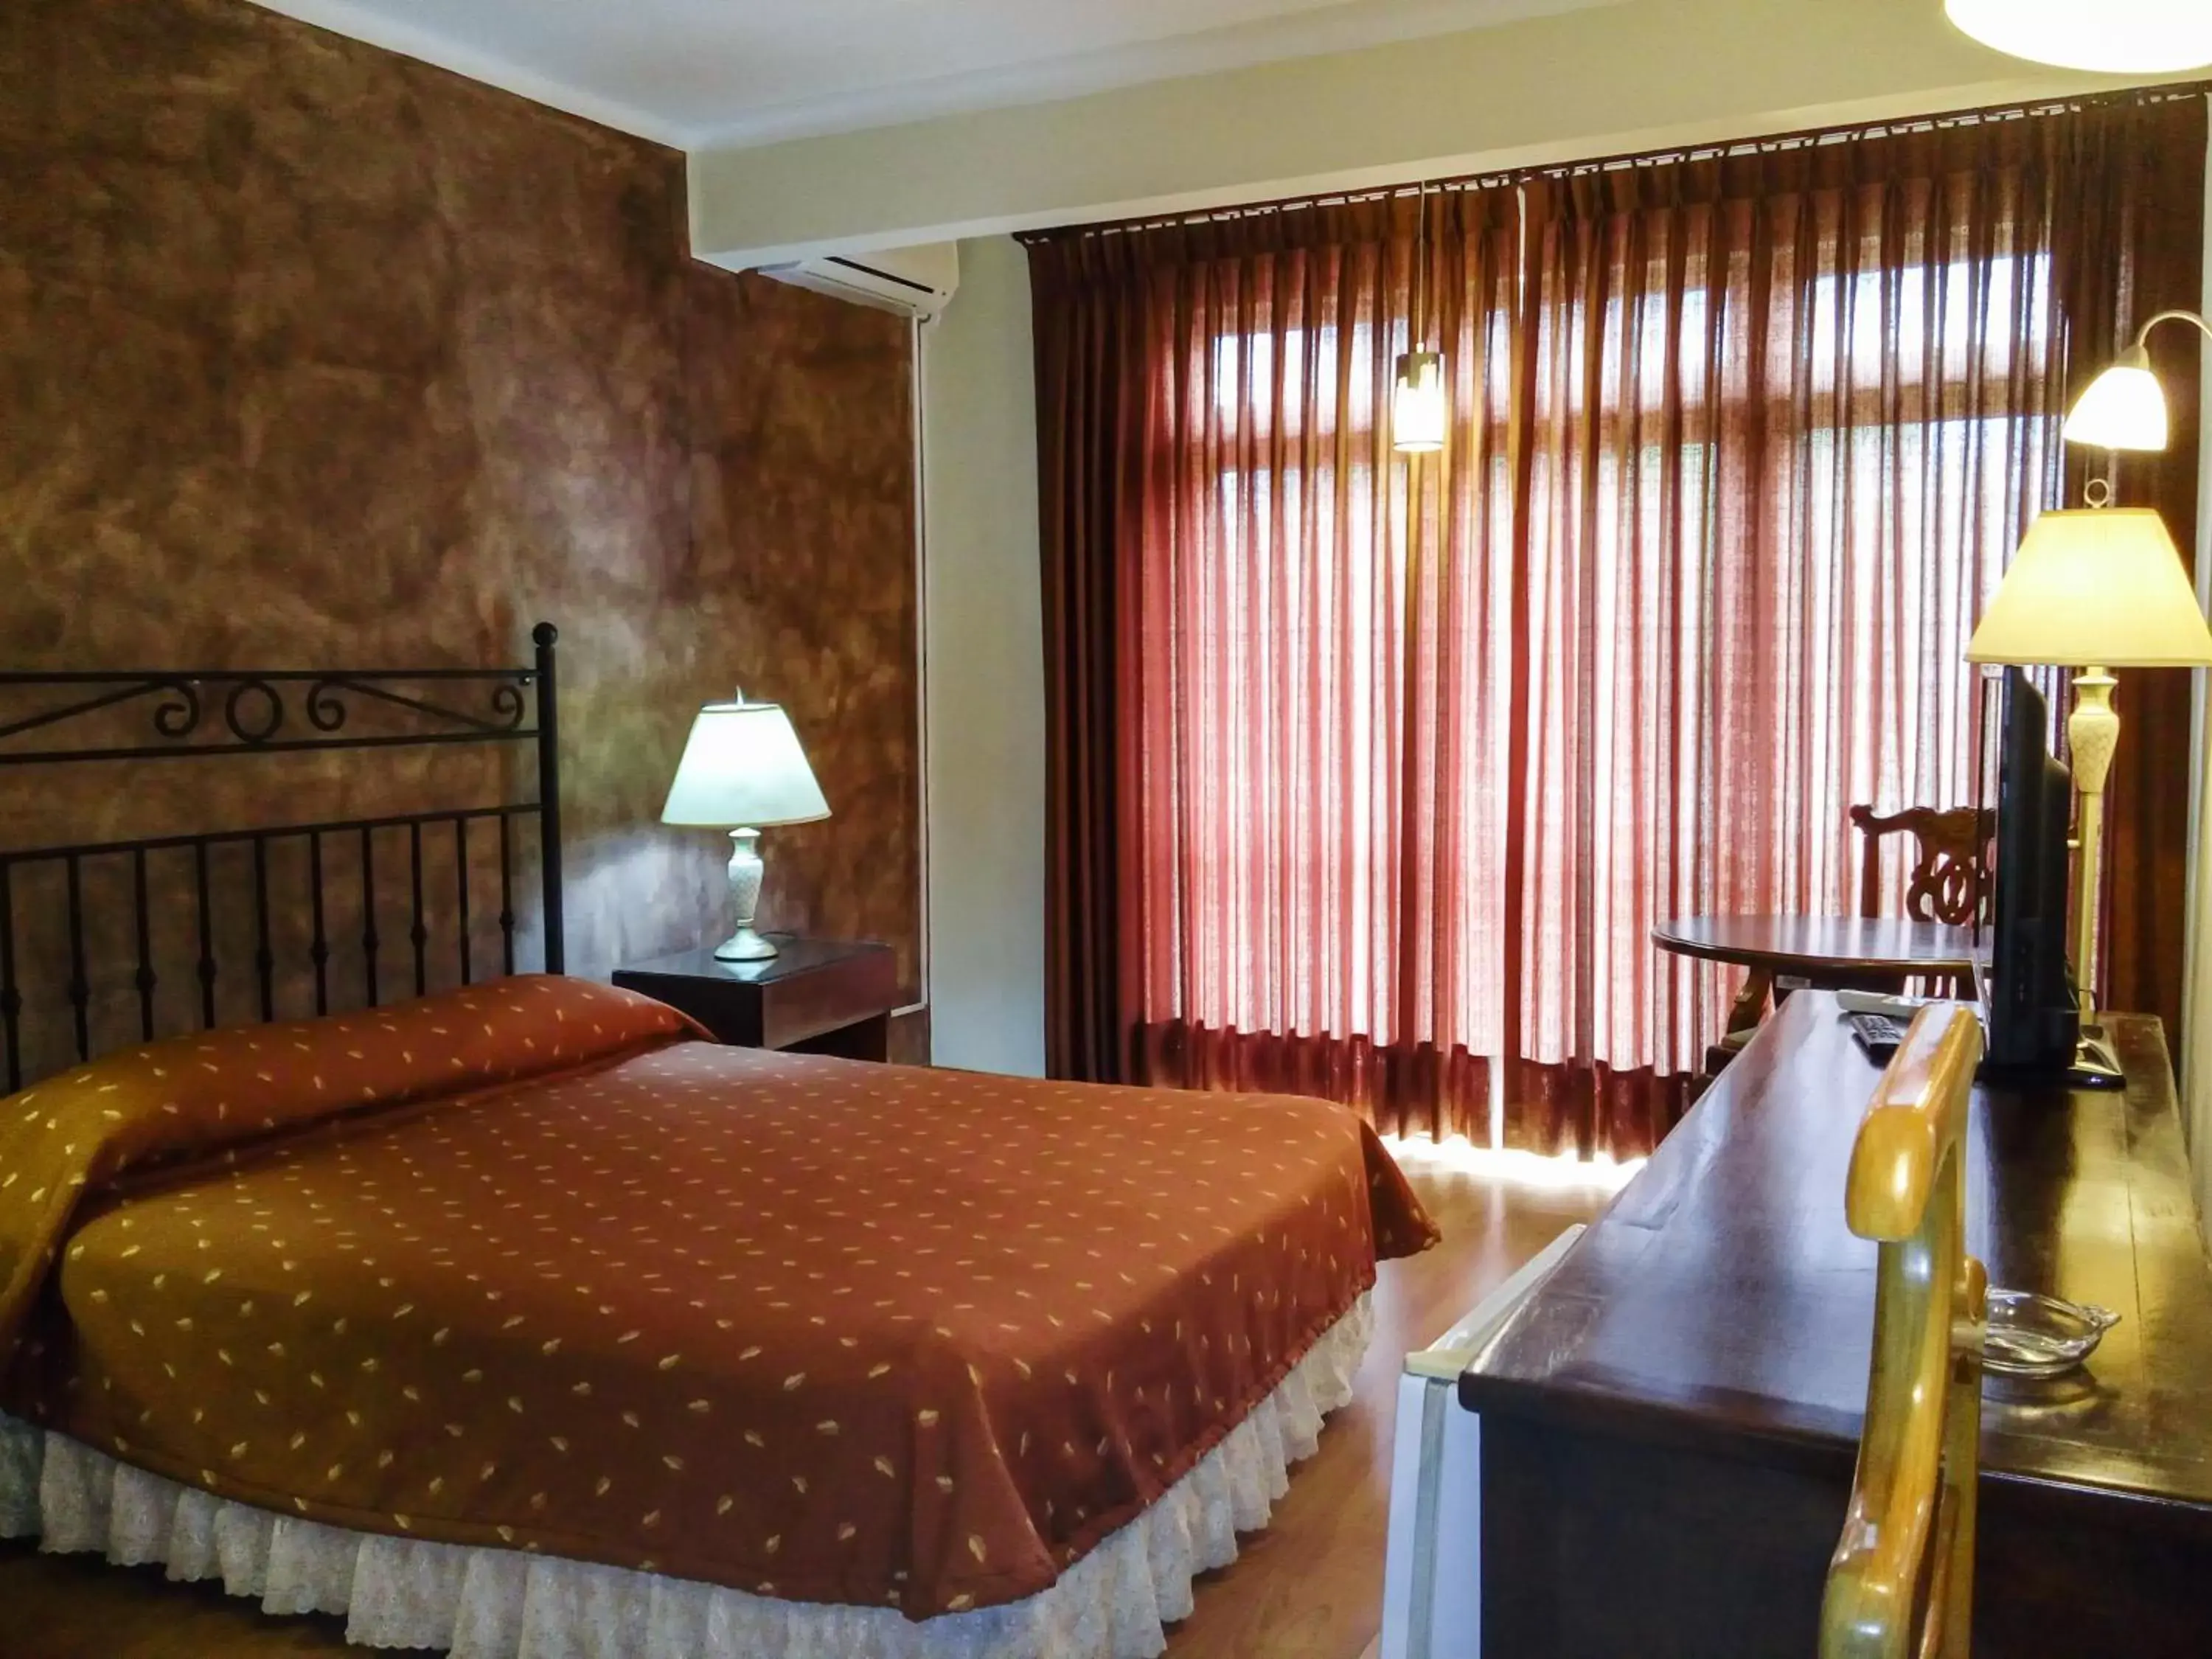 Bed, Room Photo in Hotel Los Ceibos